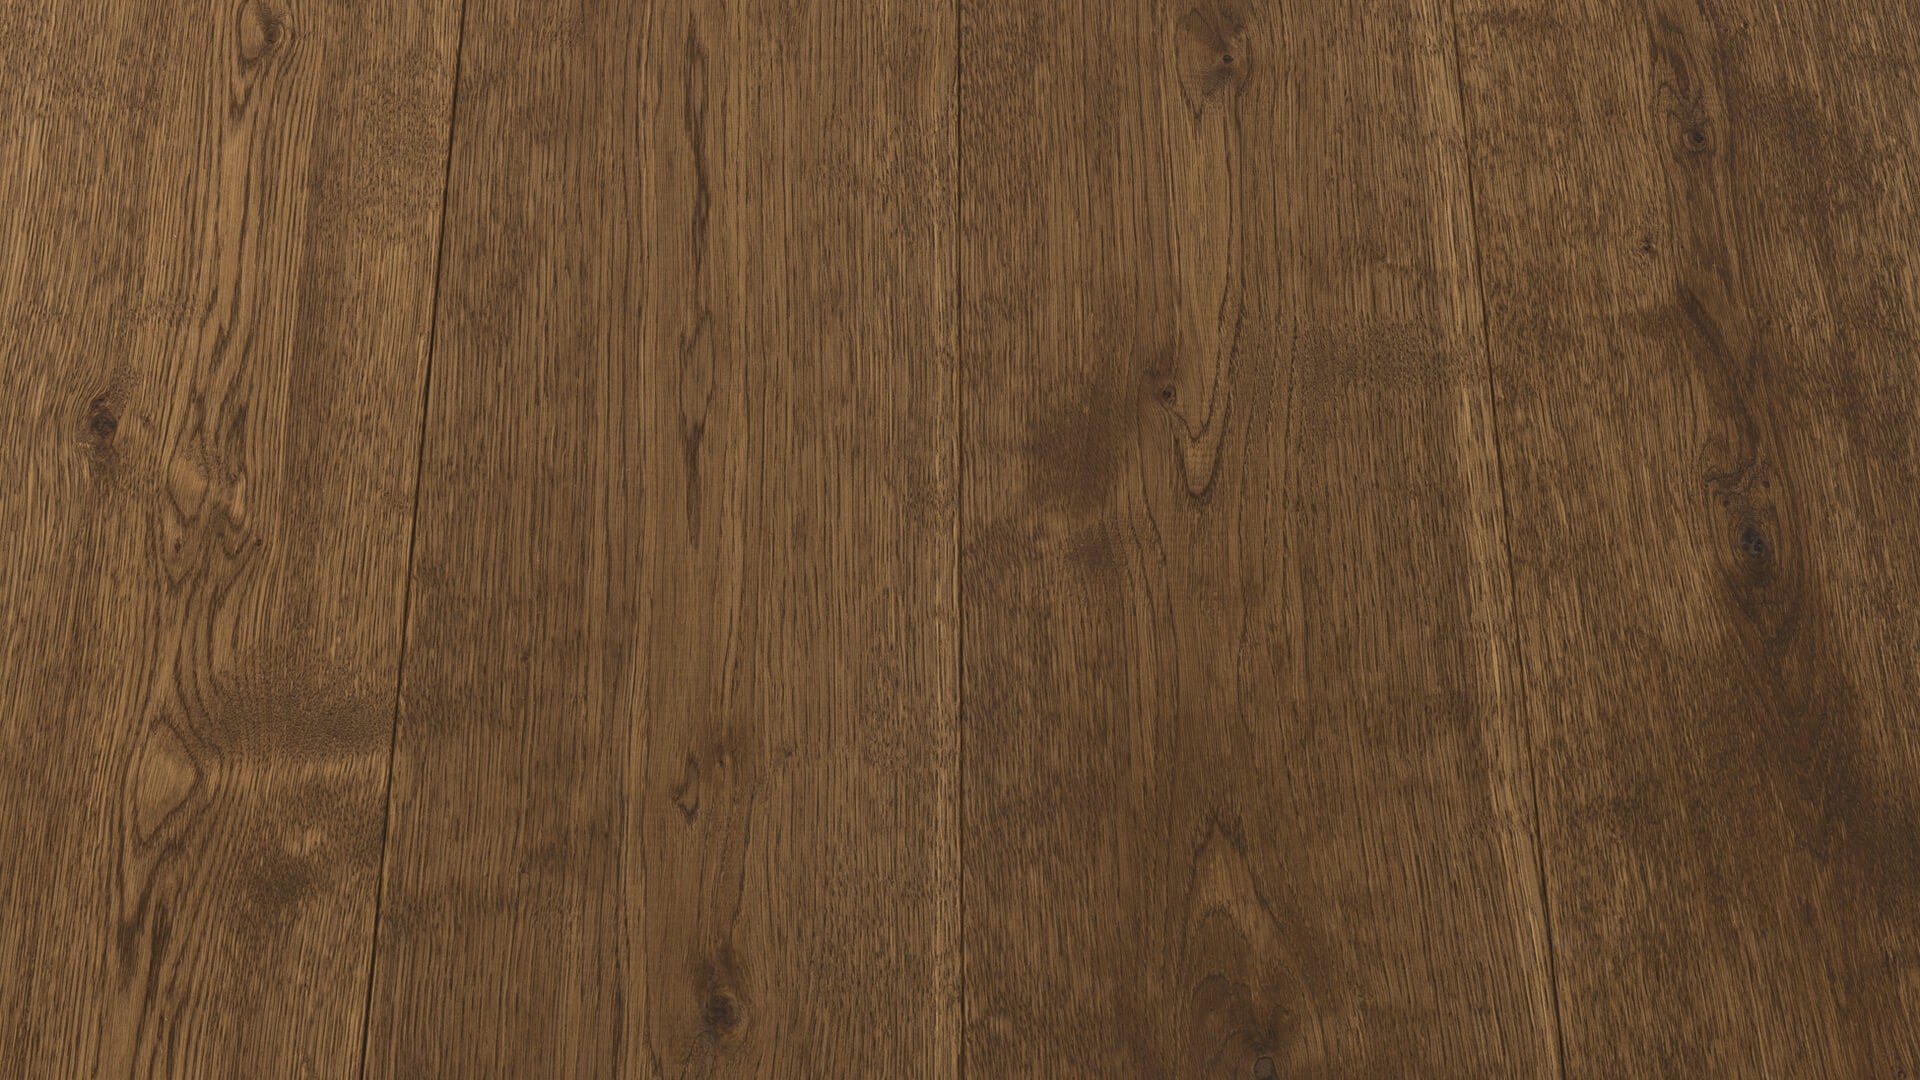 houten planken vloer in kleur oriëntaal bruin van Uipkes